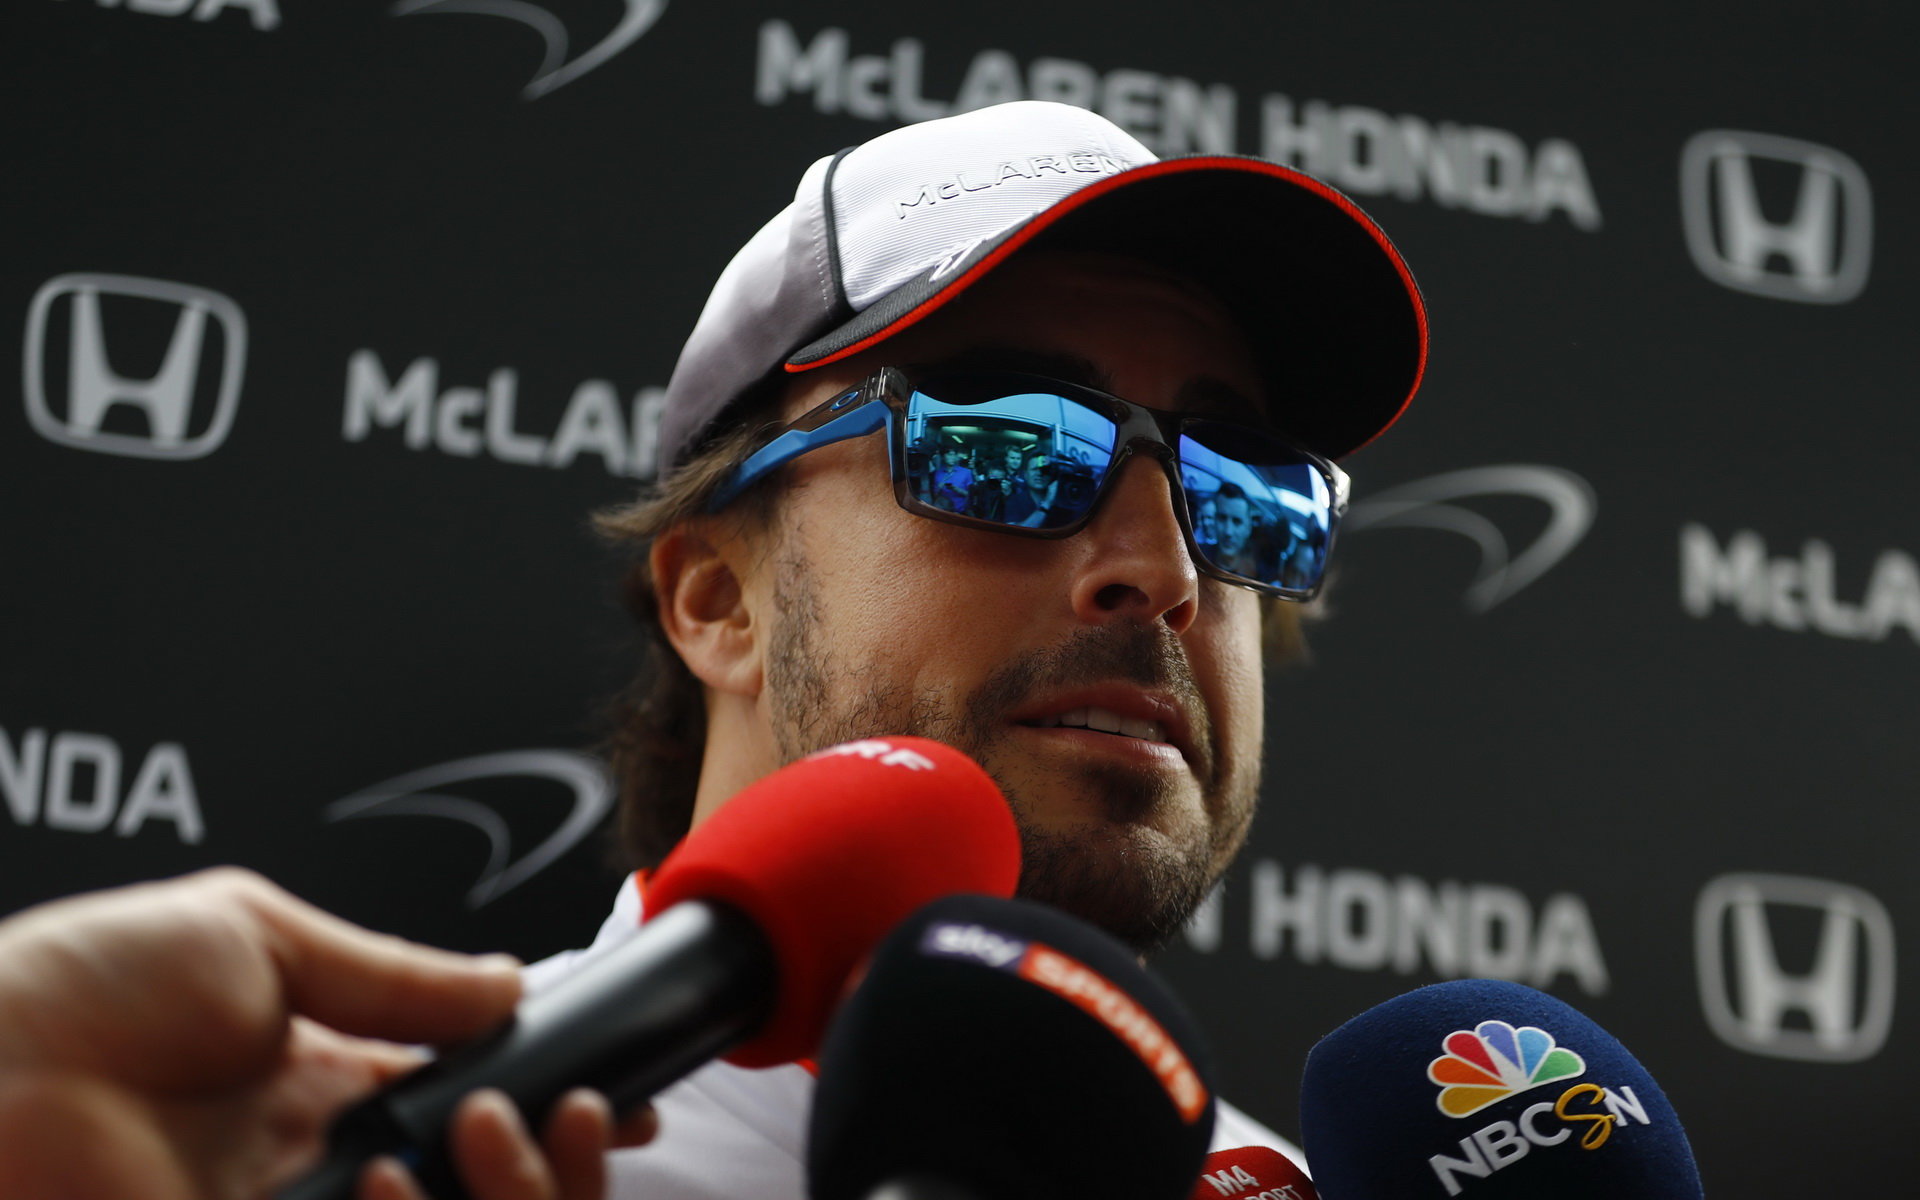 Fernando Alonso tvrdí, že spojení McLarenu s Hondou považuje za ikonické